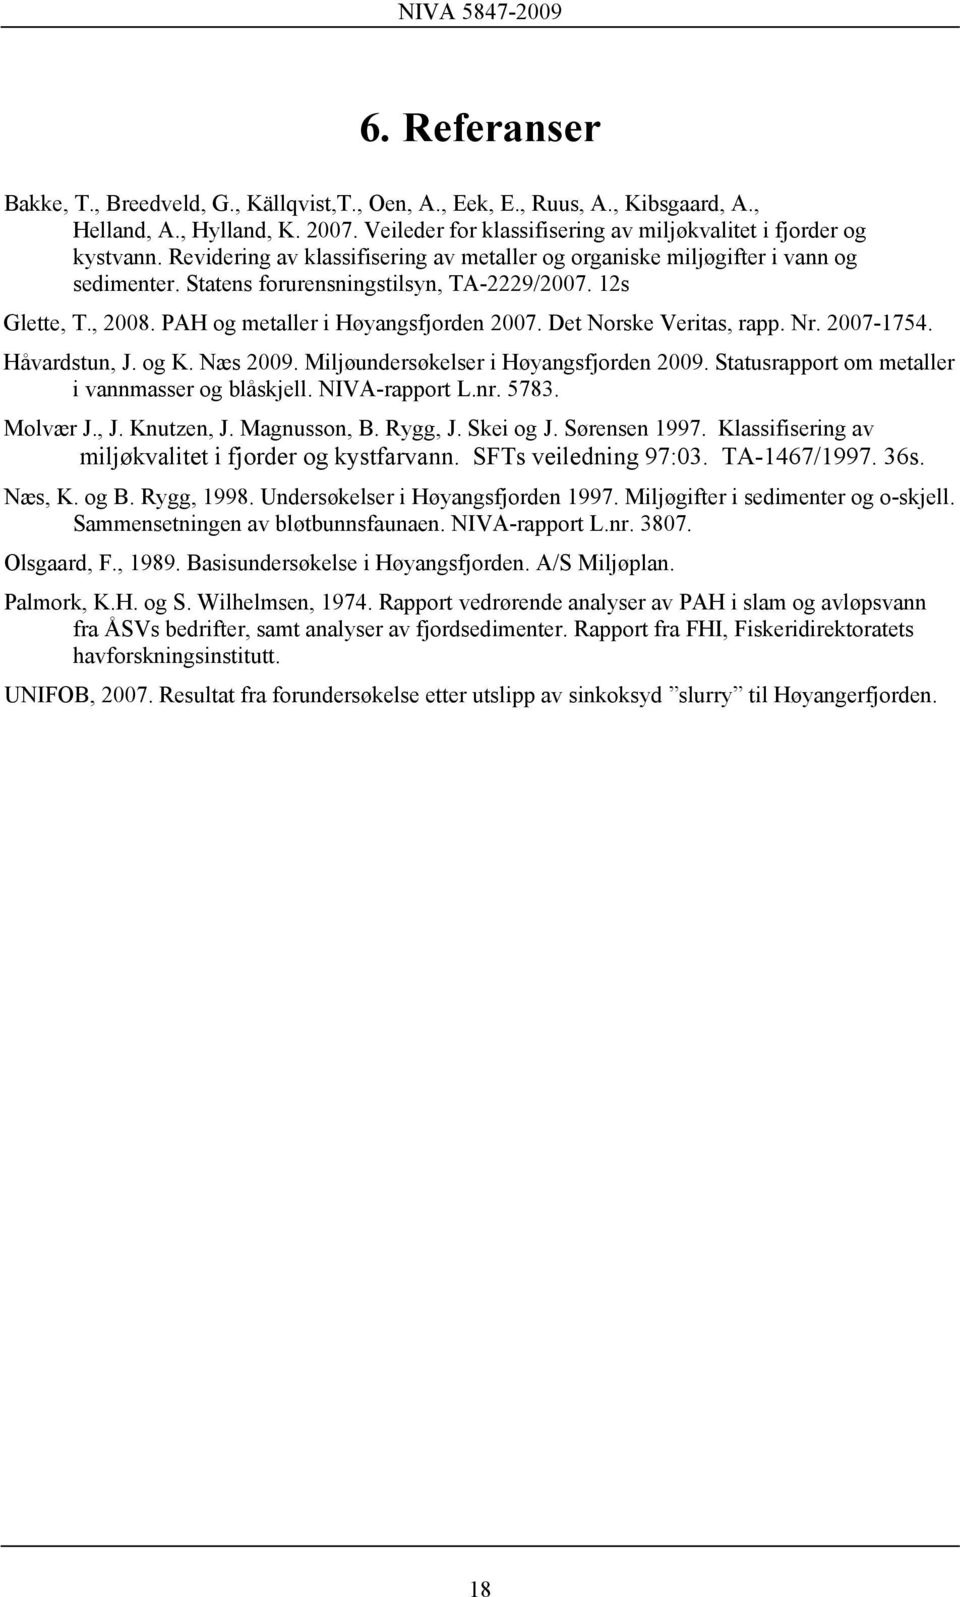 Det Norske Veritas, rapp. Nr. 2007-1754. Håvardstun, J. og K. Næs 2009. Miljøundersøkelser i Høyangsfjorden 2009. Statusrapport om metaller i vannmasser og blåskjell. NIVA-rapport L.nr. 5783.